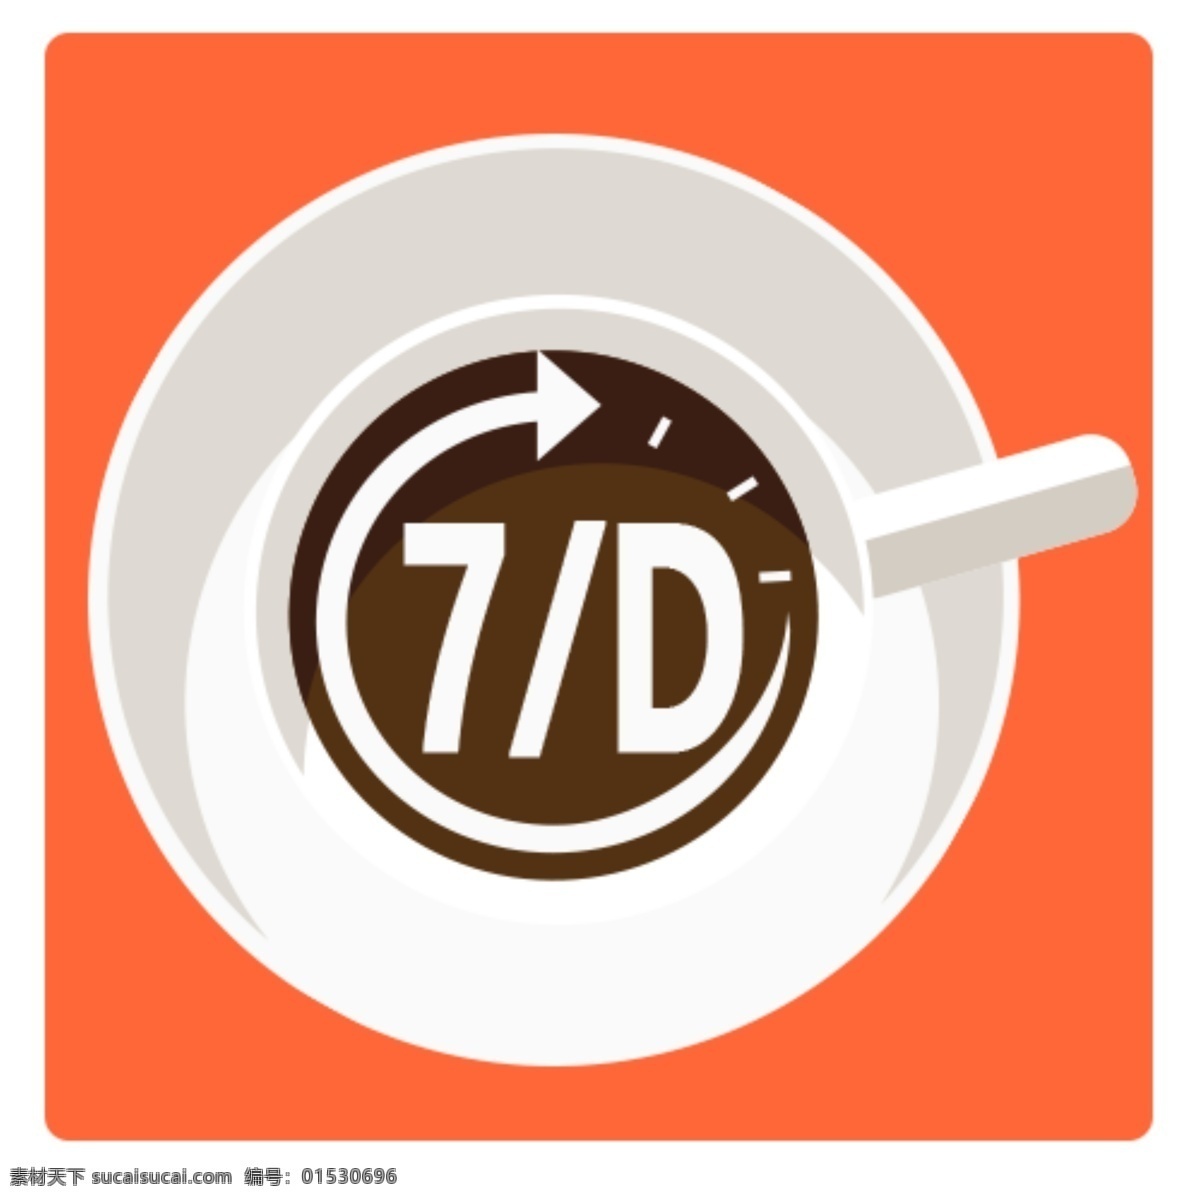 咖啡杯 时间 logo 棕色 7d 圆形